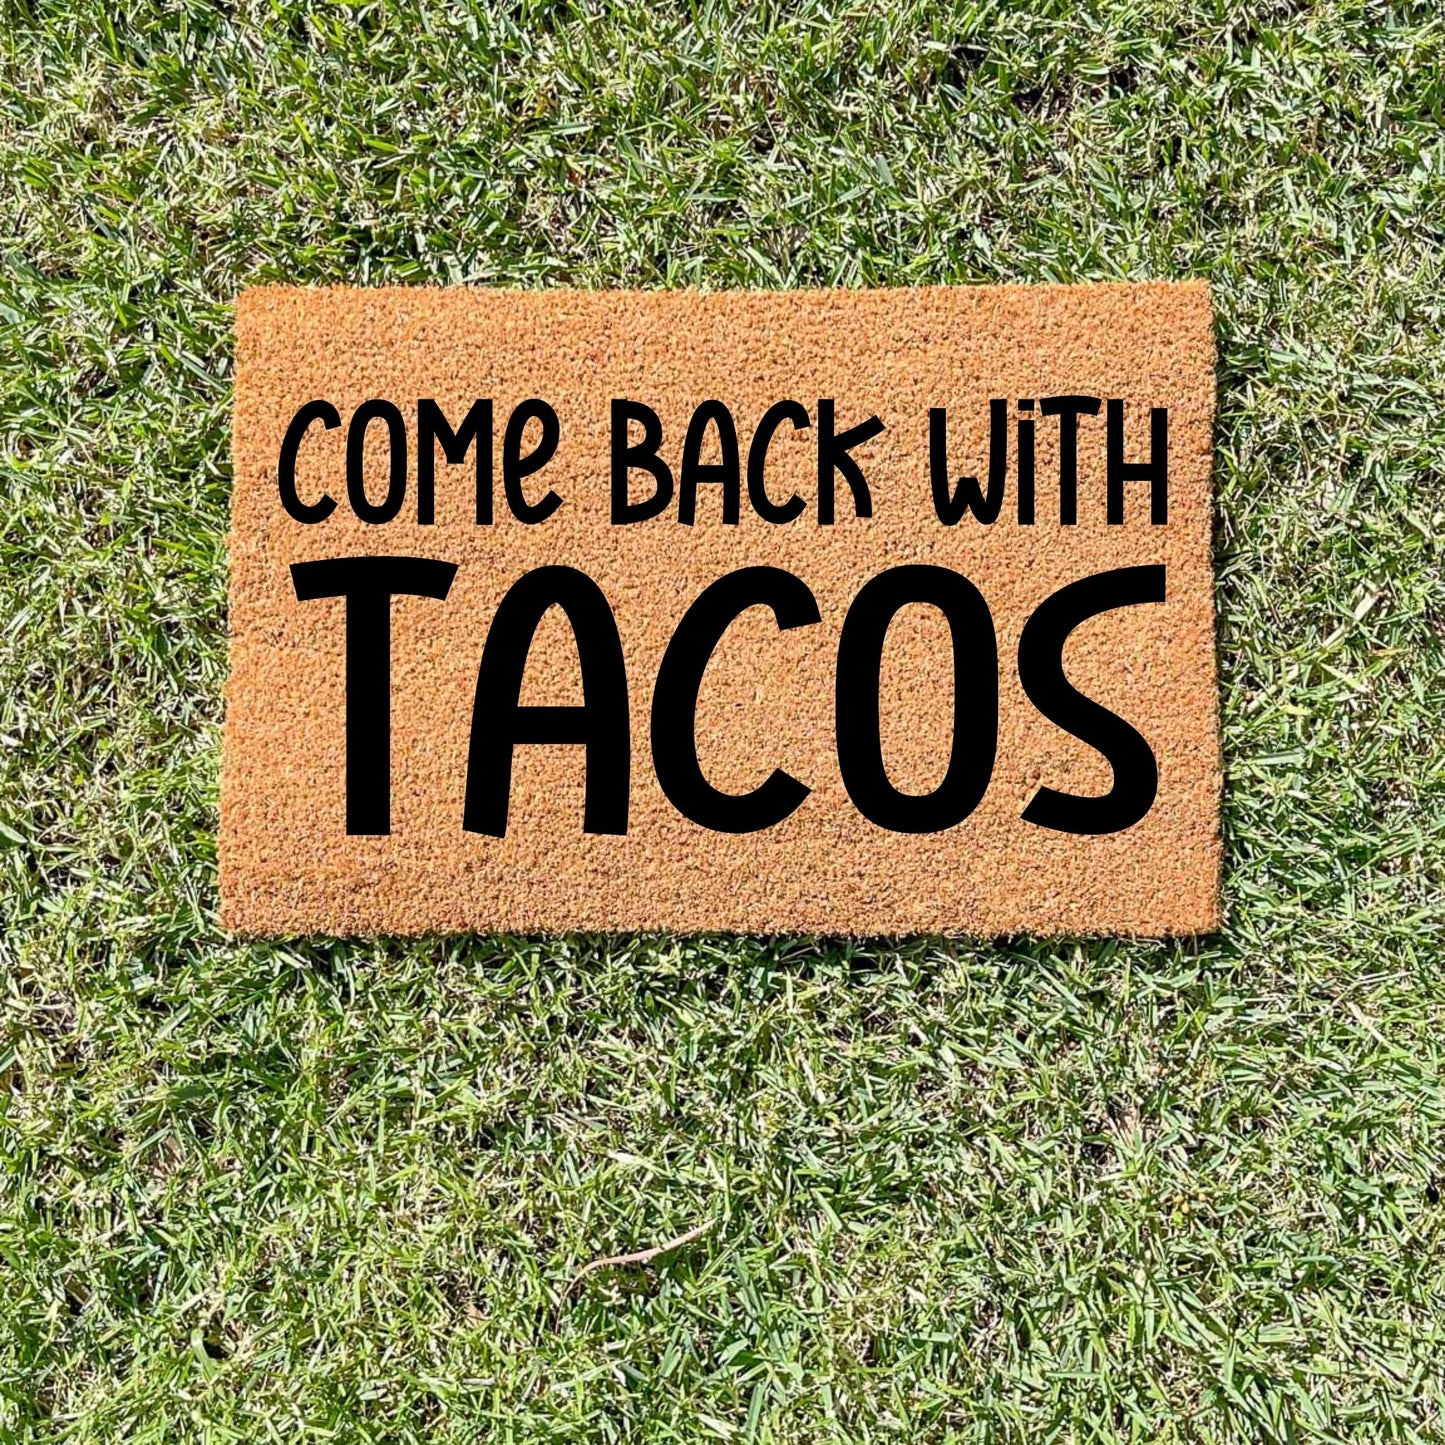 Come back with tacos doormat, unique doormat, custom doormat, personalised doormat